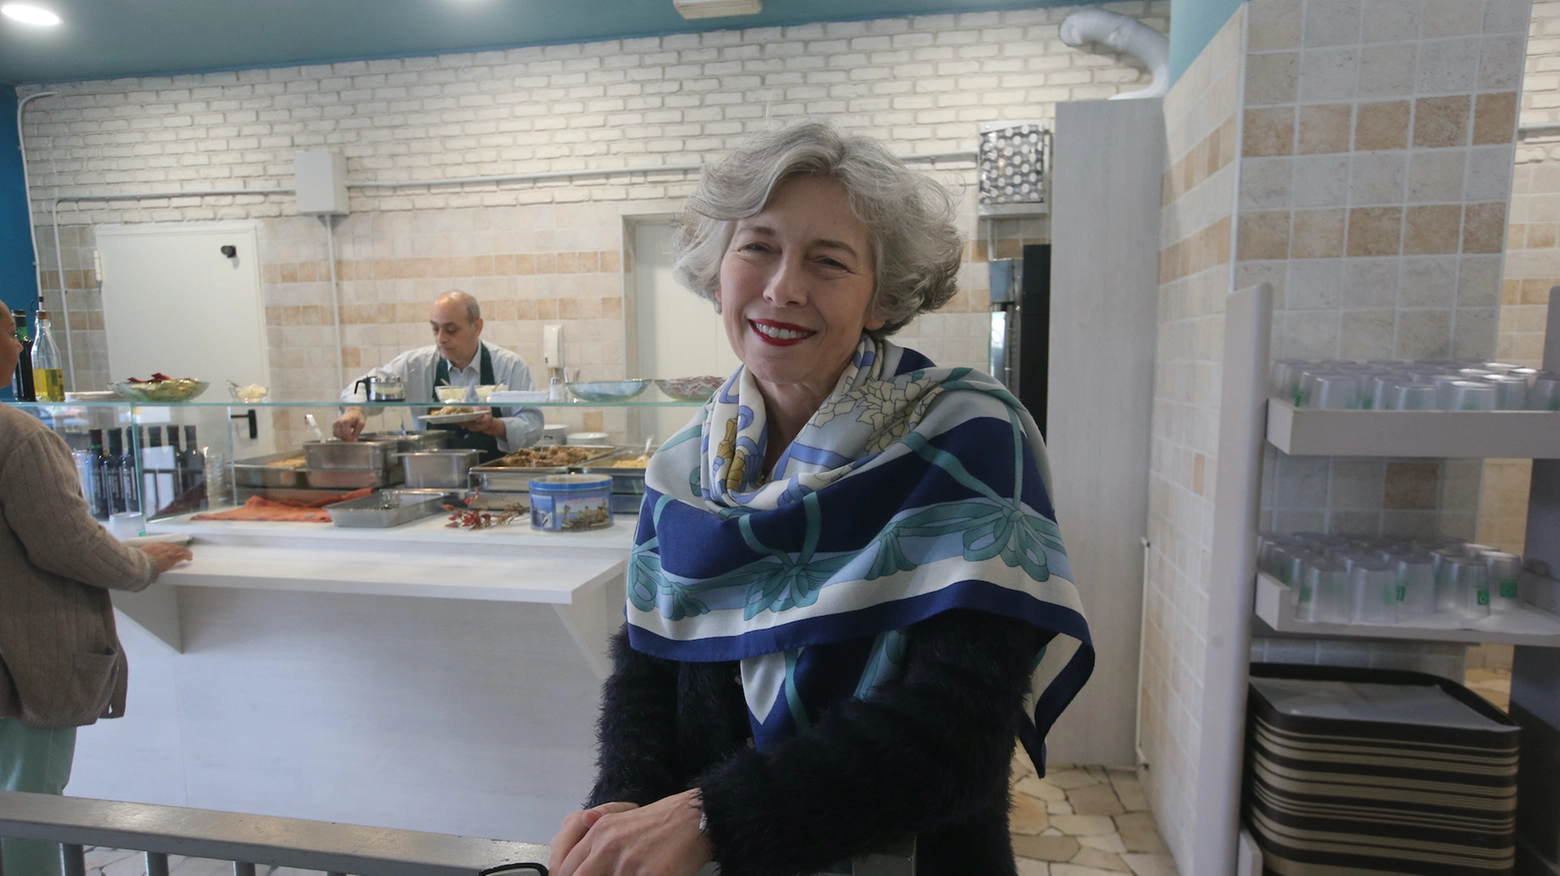 Irene Pivetti alla mensa dei poveri a Monza: "La politica è il passato, felicissima qui"